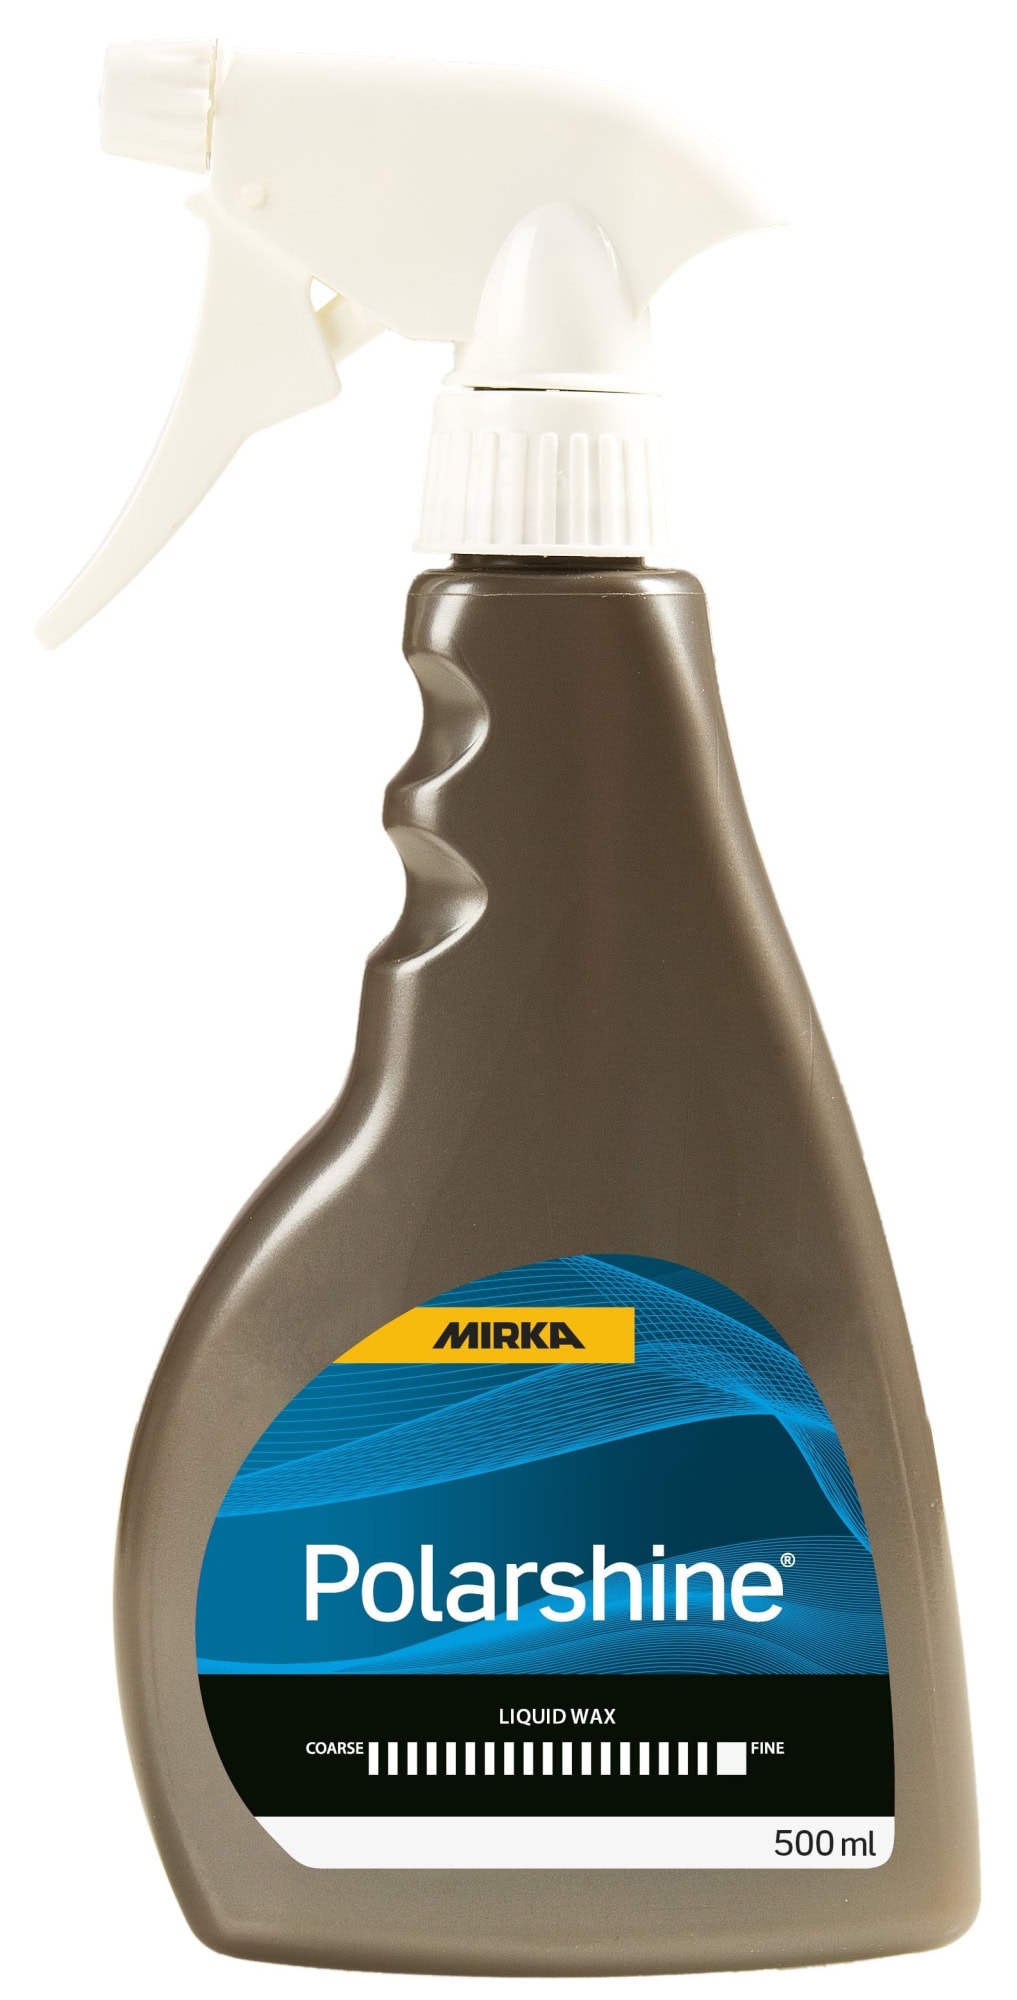 Mirka® Polarshine Liquid Wax 7992725111, 500 ml, Flüssigwachs, zur schnellen Versiegelung von polierten Oberflächen